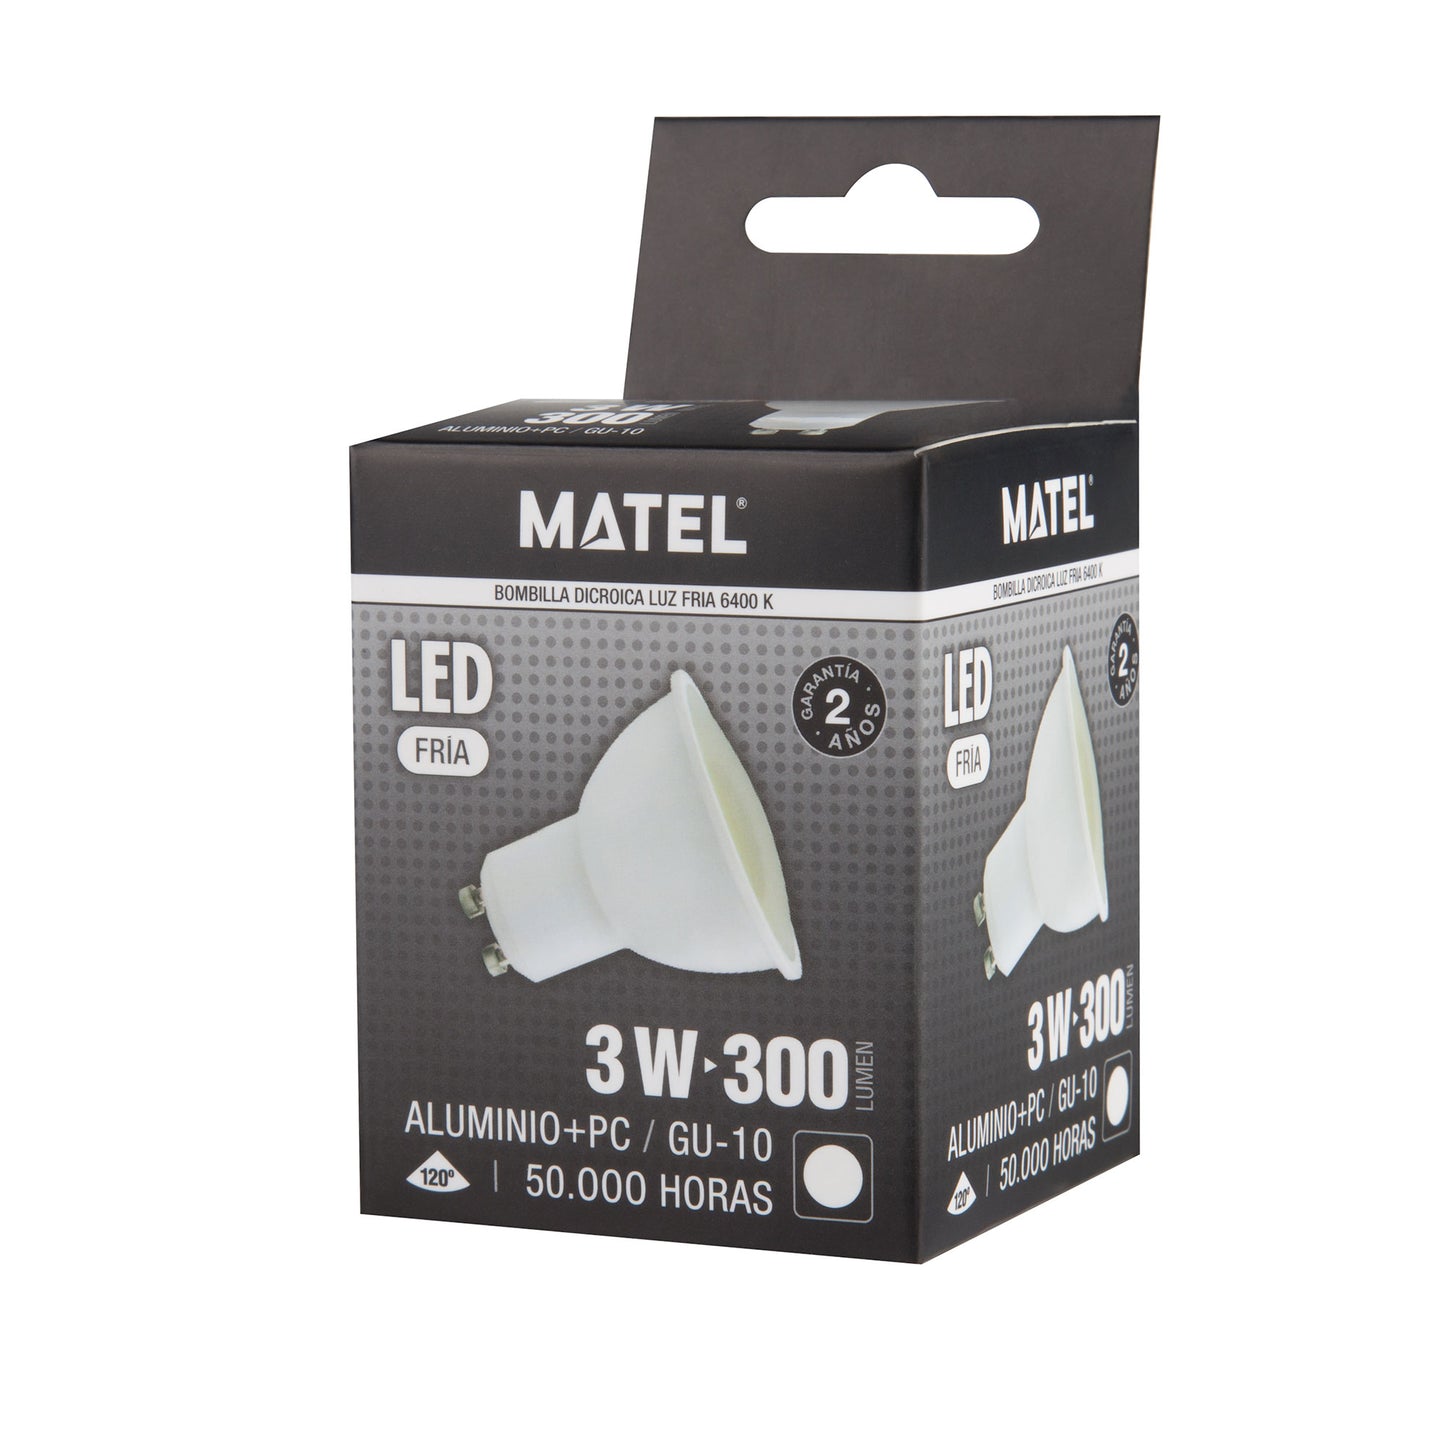 DICHROIC LED LAMP MATEL GU10 3W COLD 